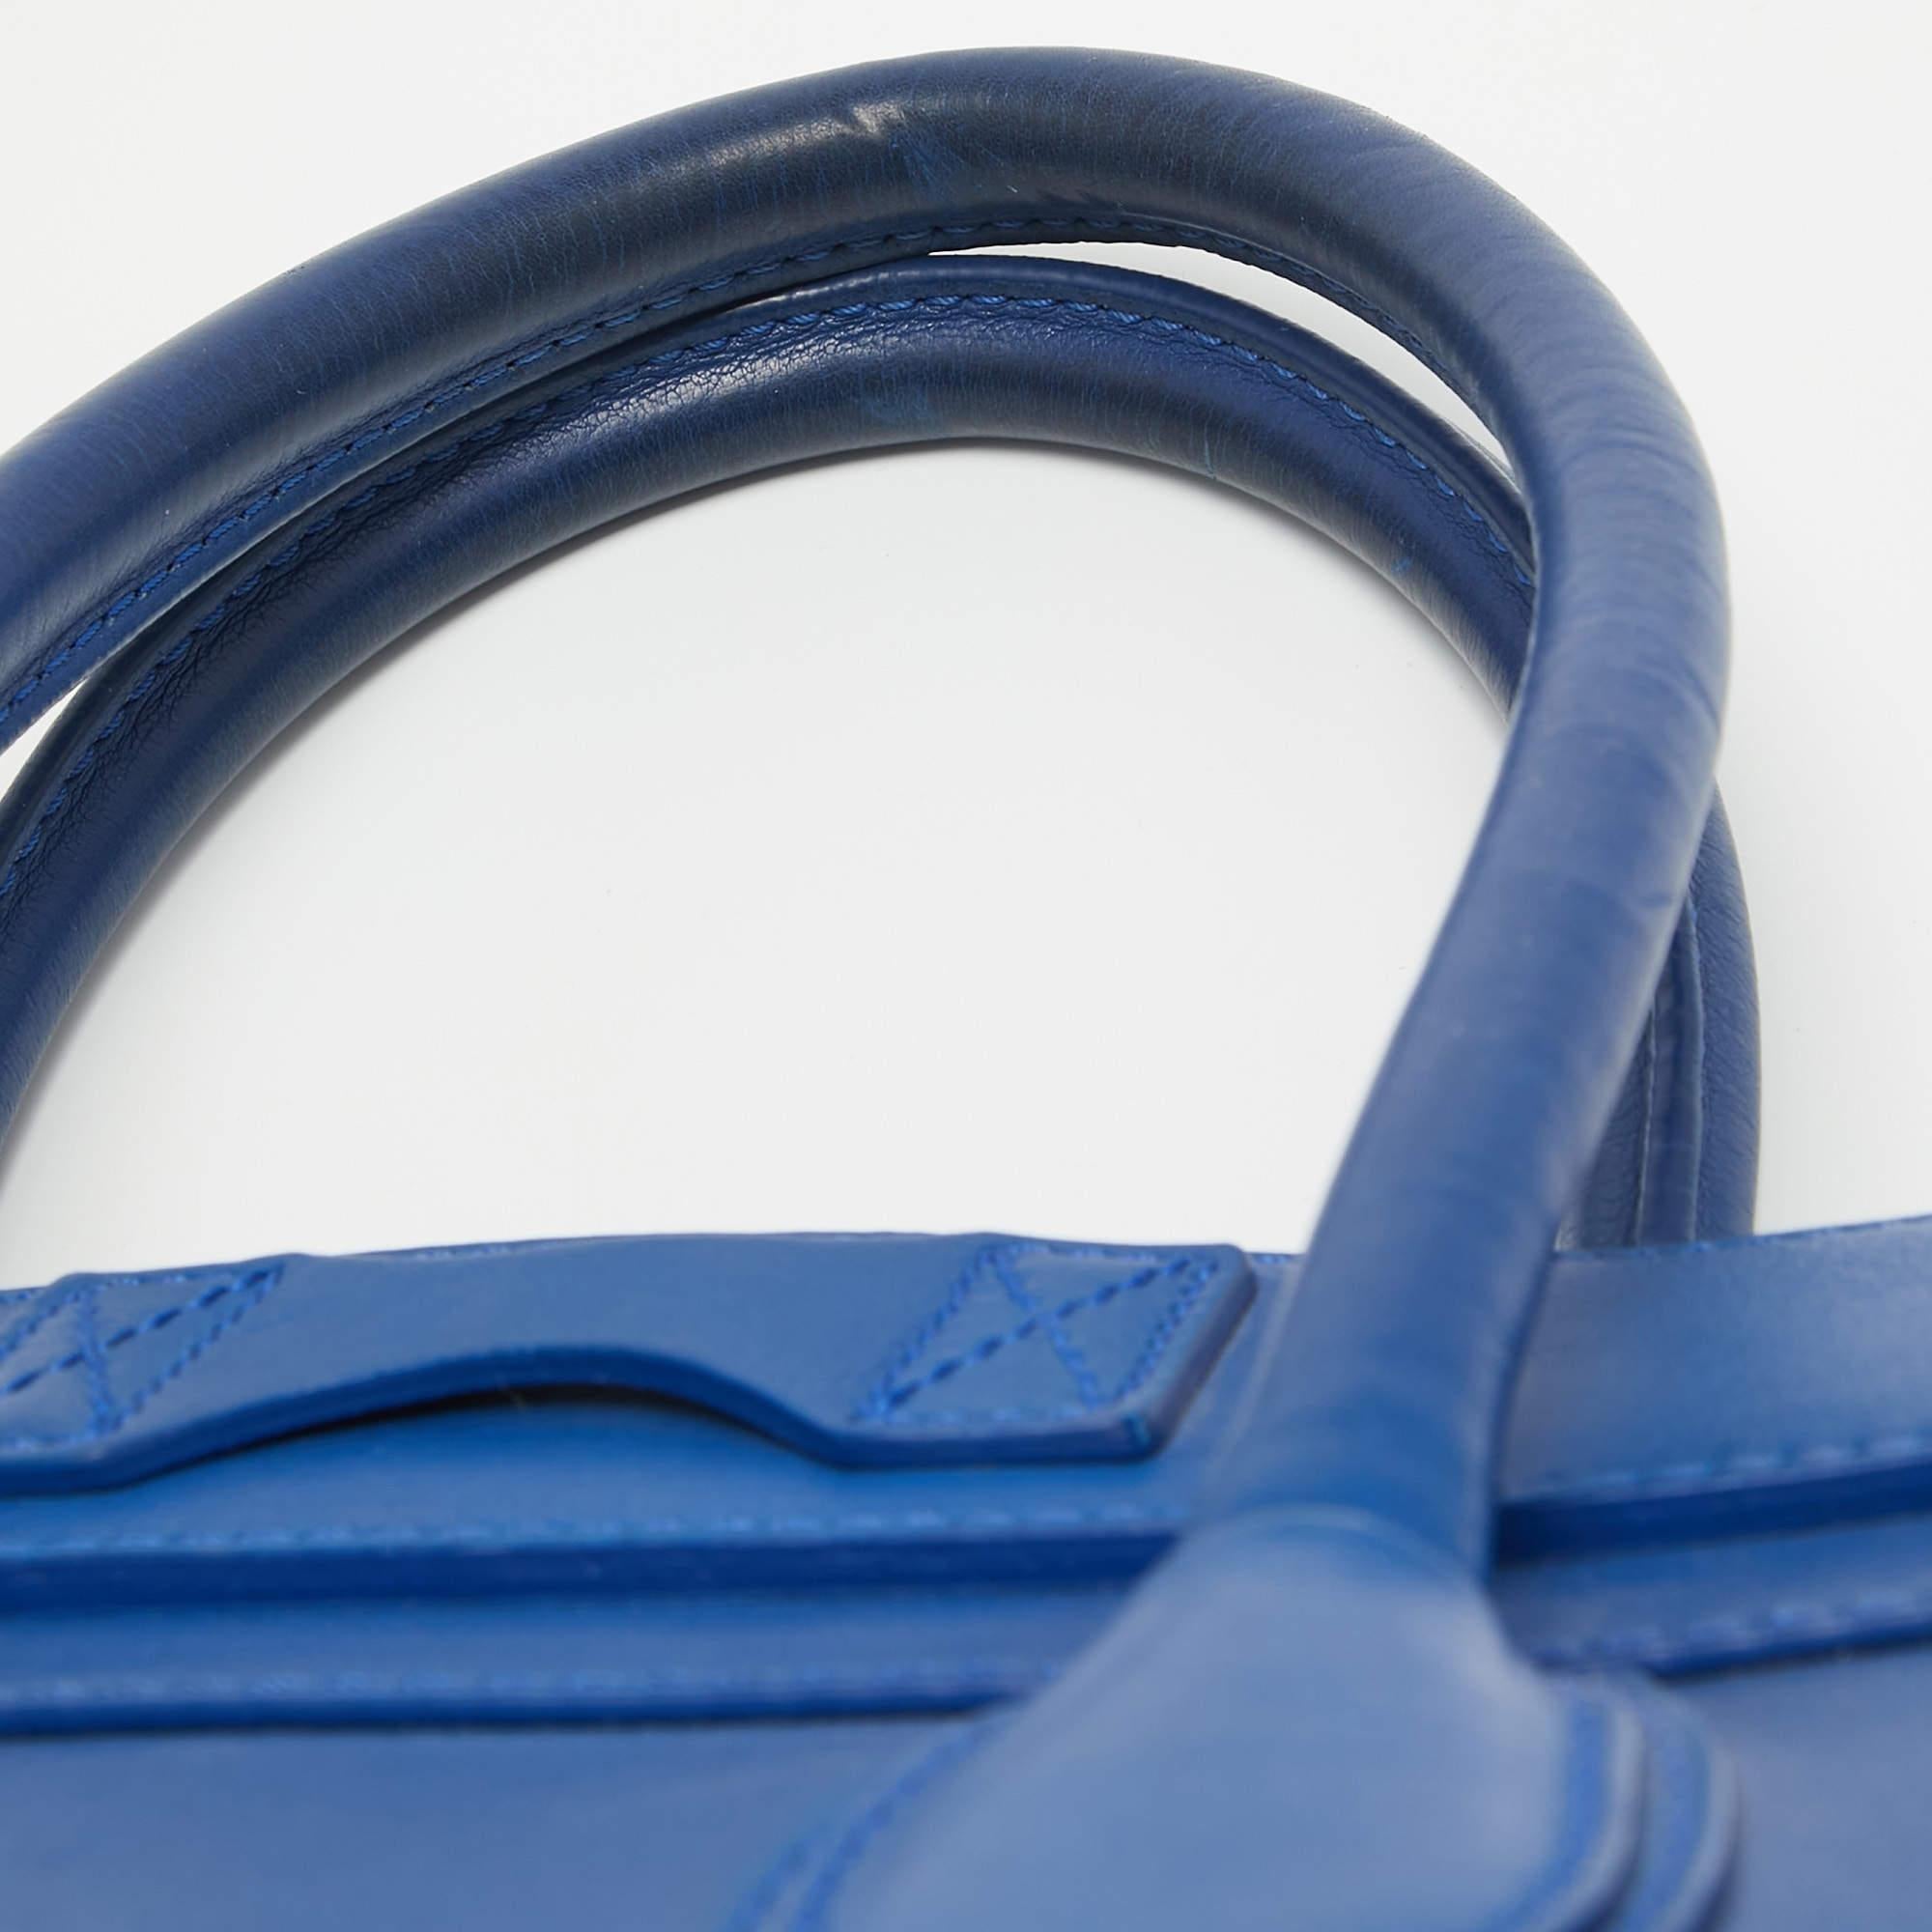 Celine Blue Leather Mini Luggage Tote In Fair Condition For Sale In Dubai, Al Qouz 2